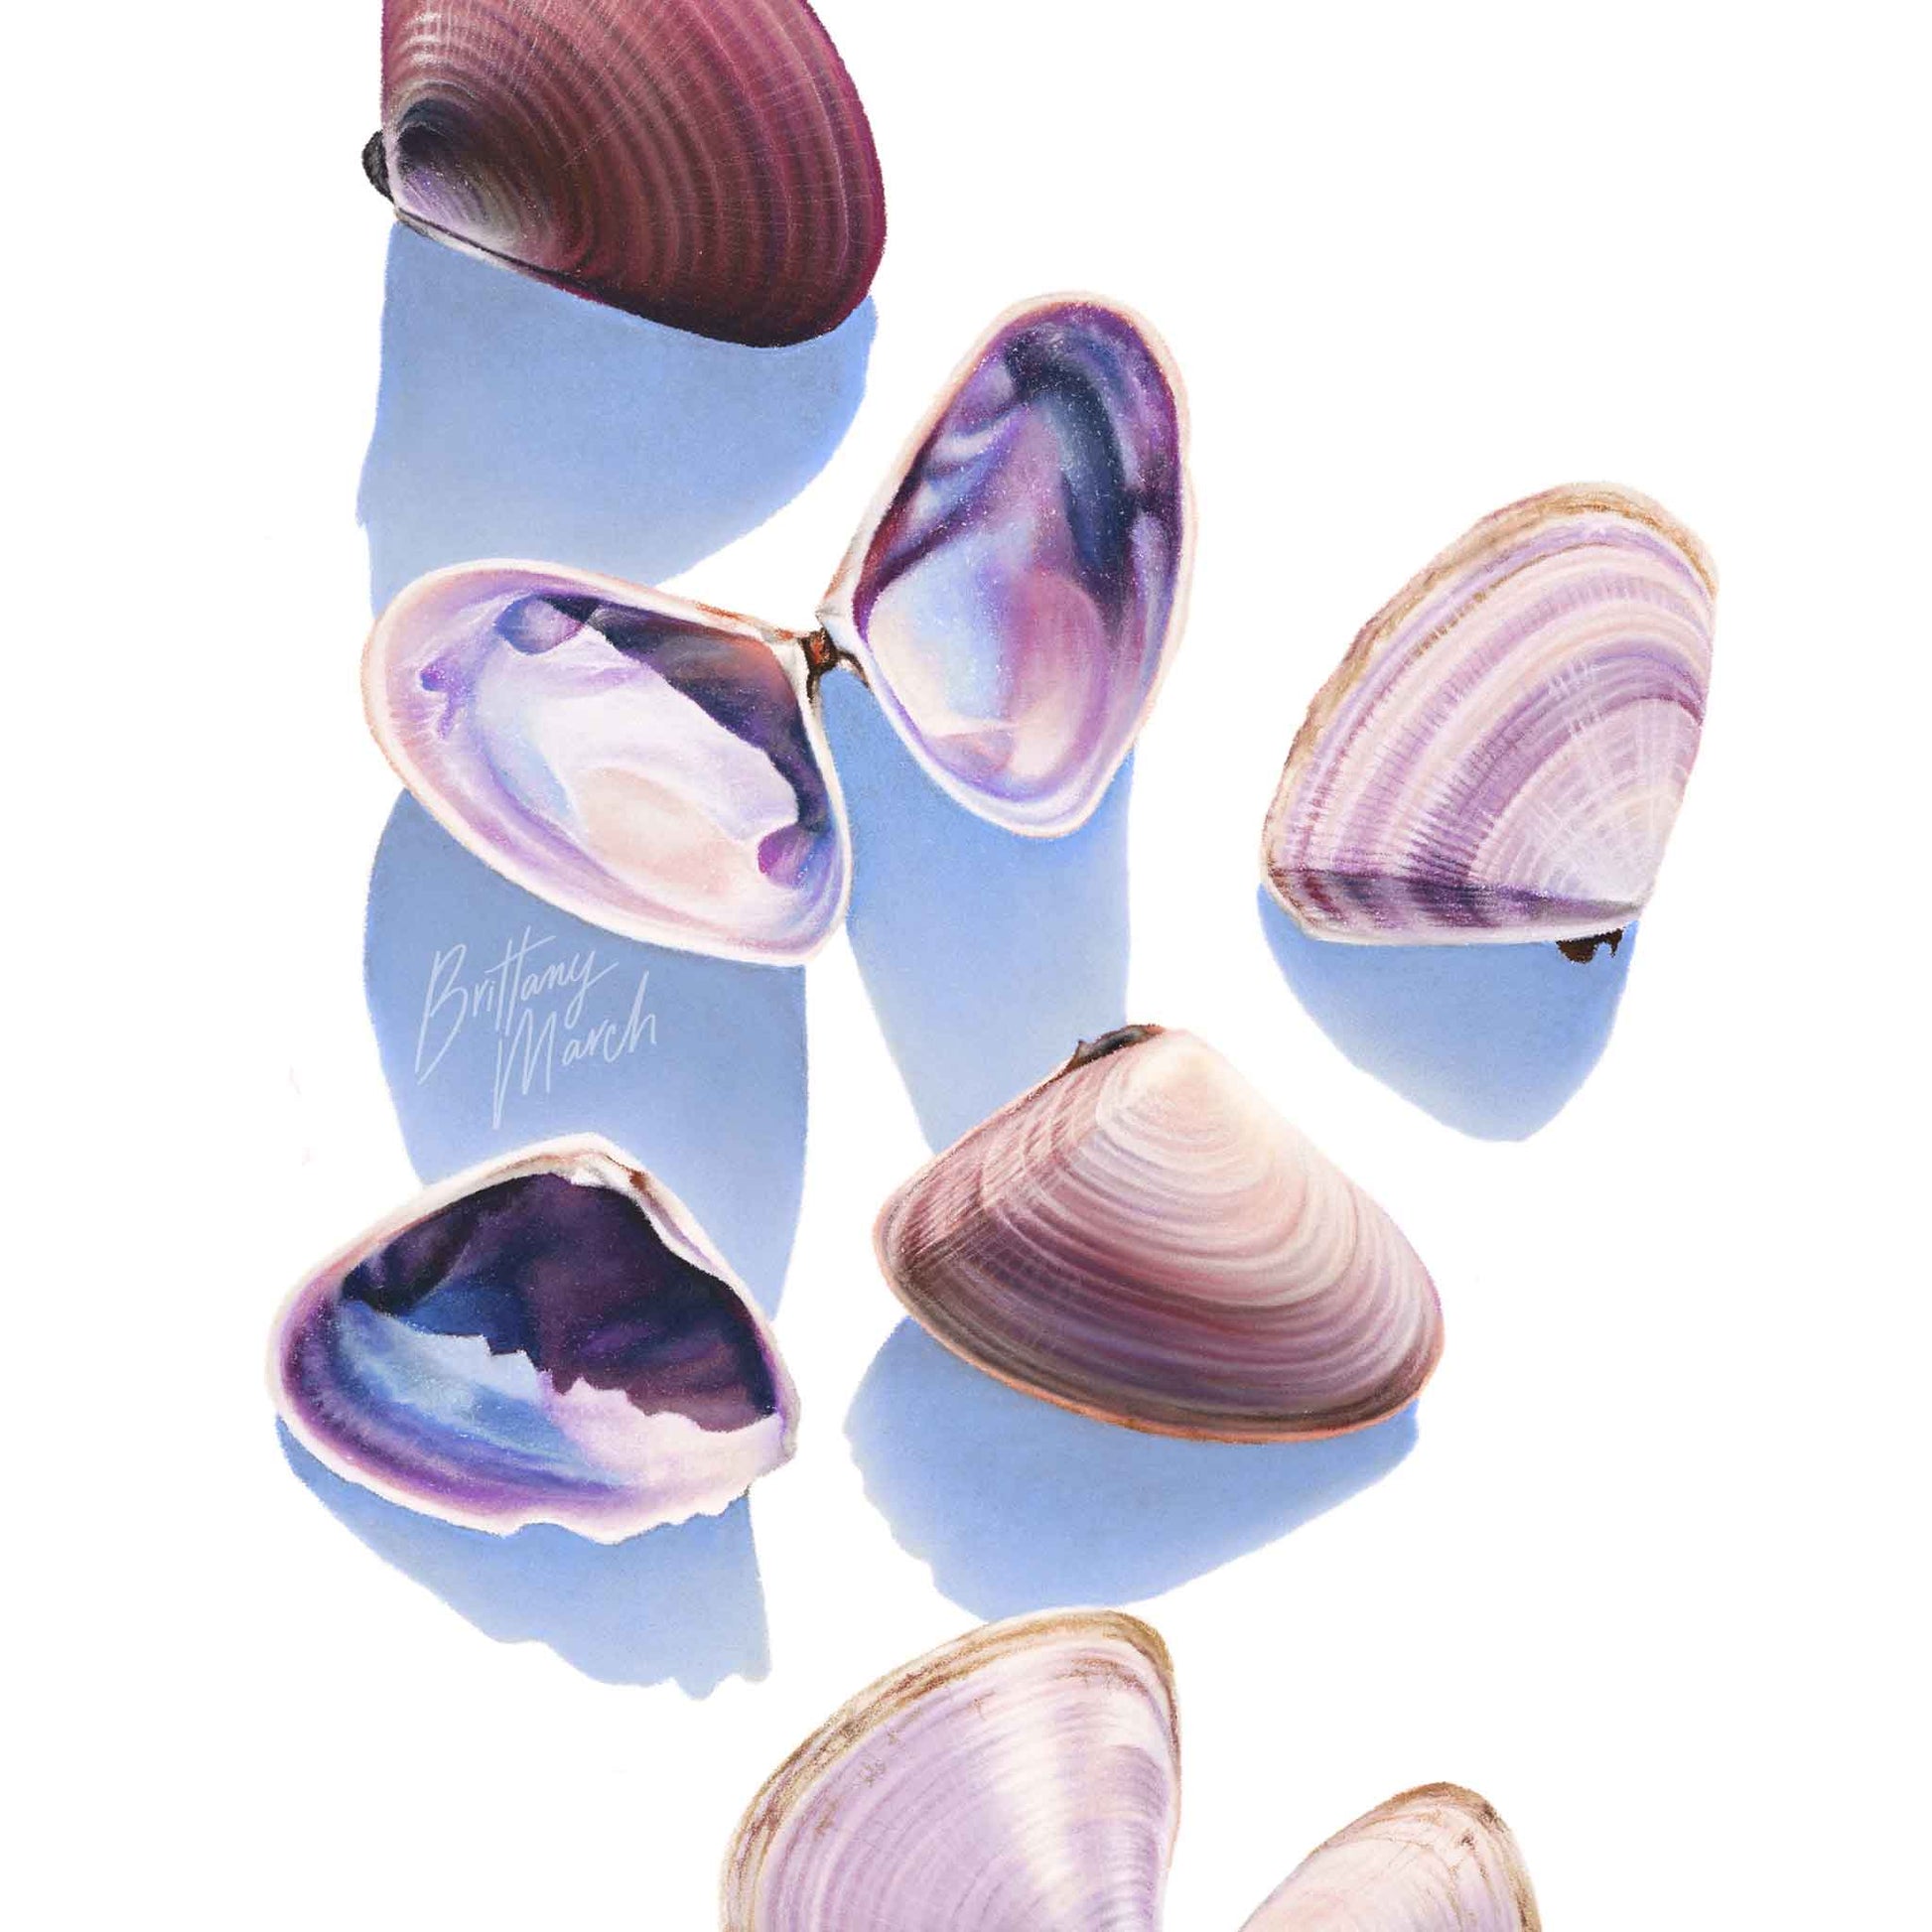 Australian Pipi Shell artwork